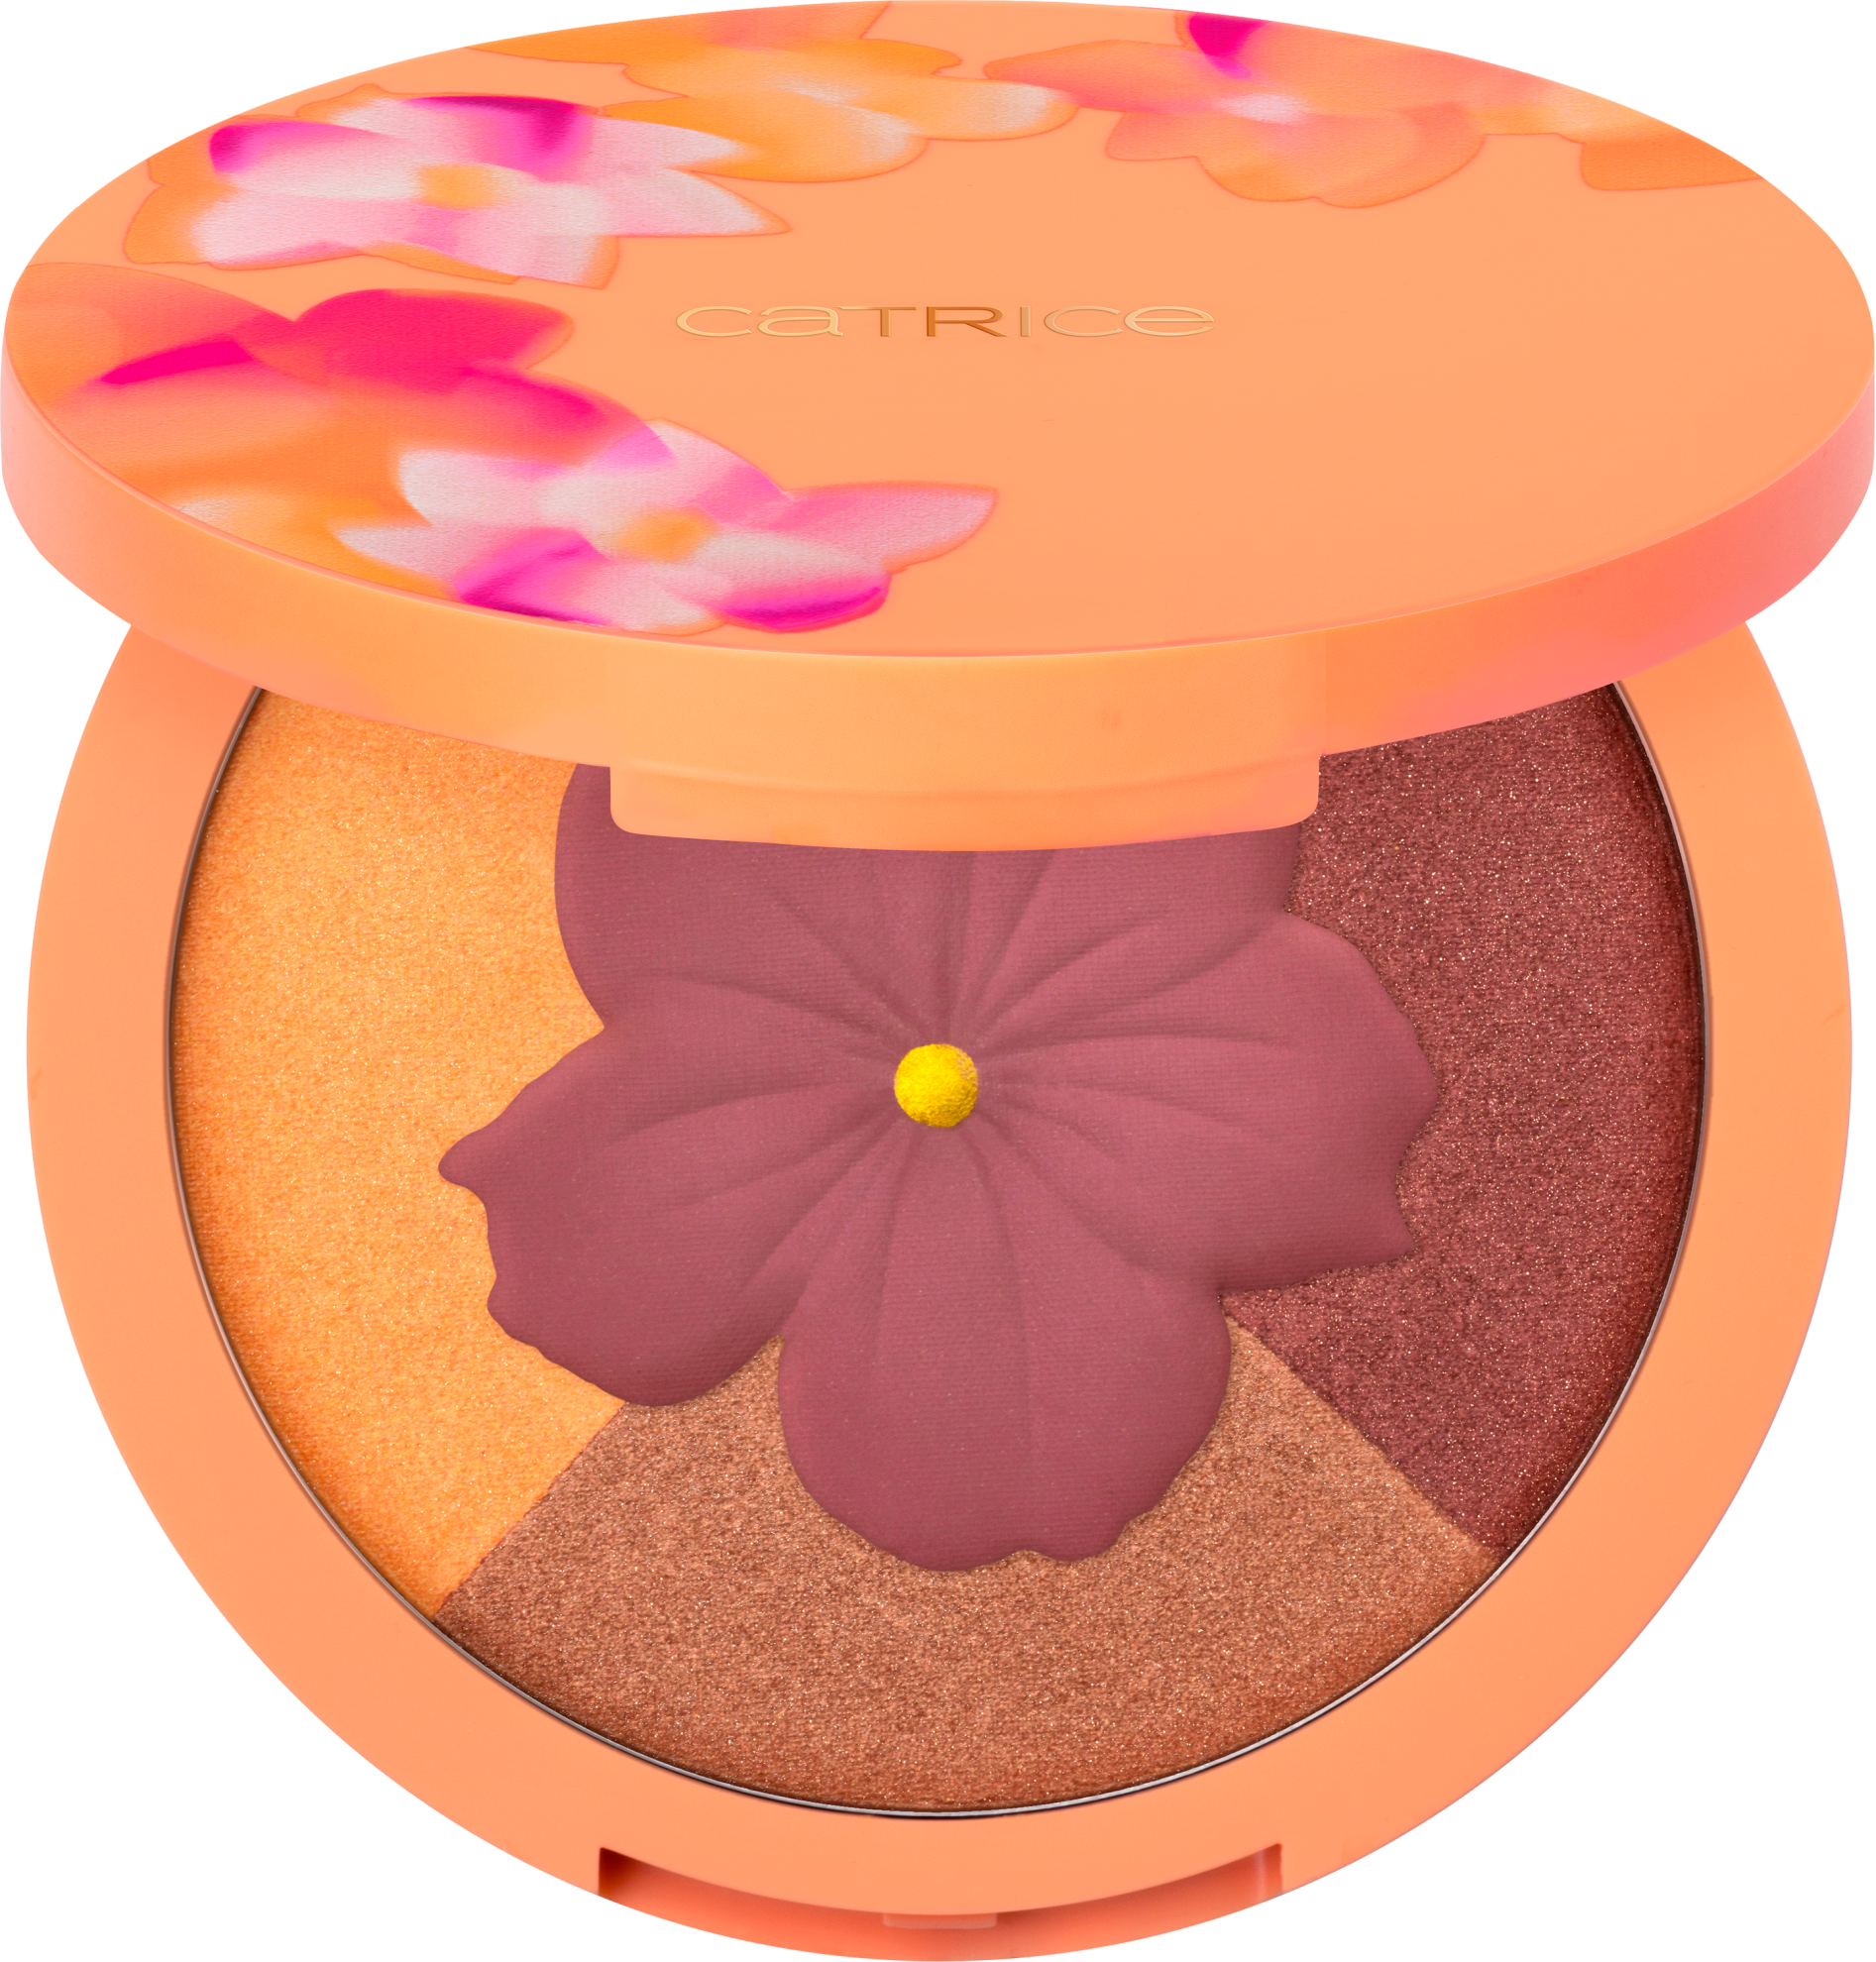 Lidschatten-Palette »SEEKING FLOWERS Eyeshadow Palette«